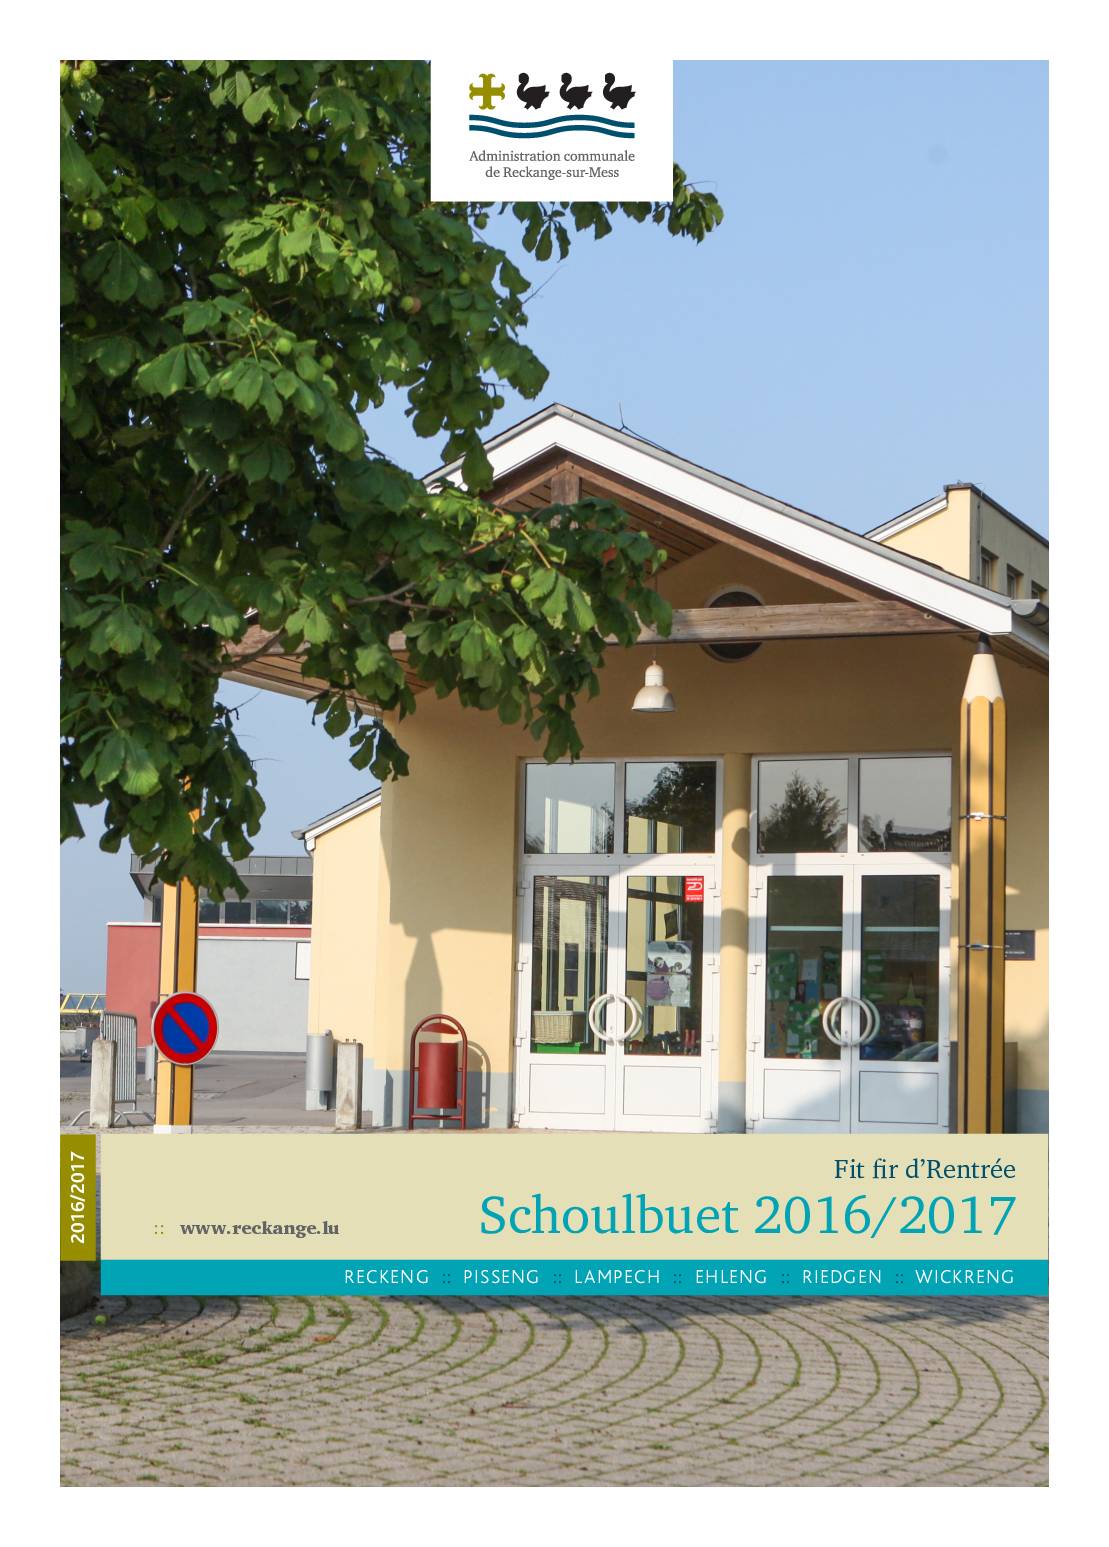 Schoulbuet 2016-2017